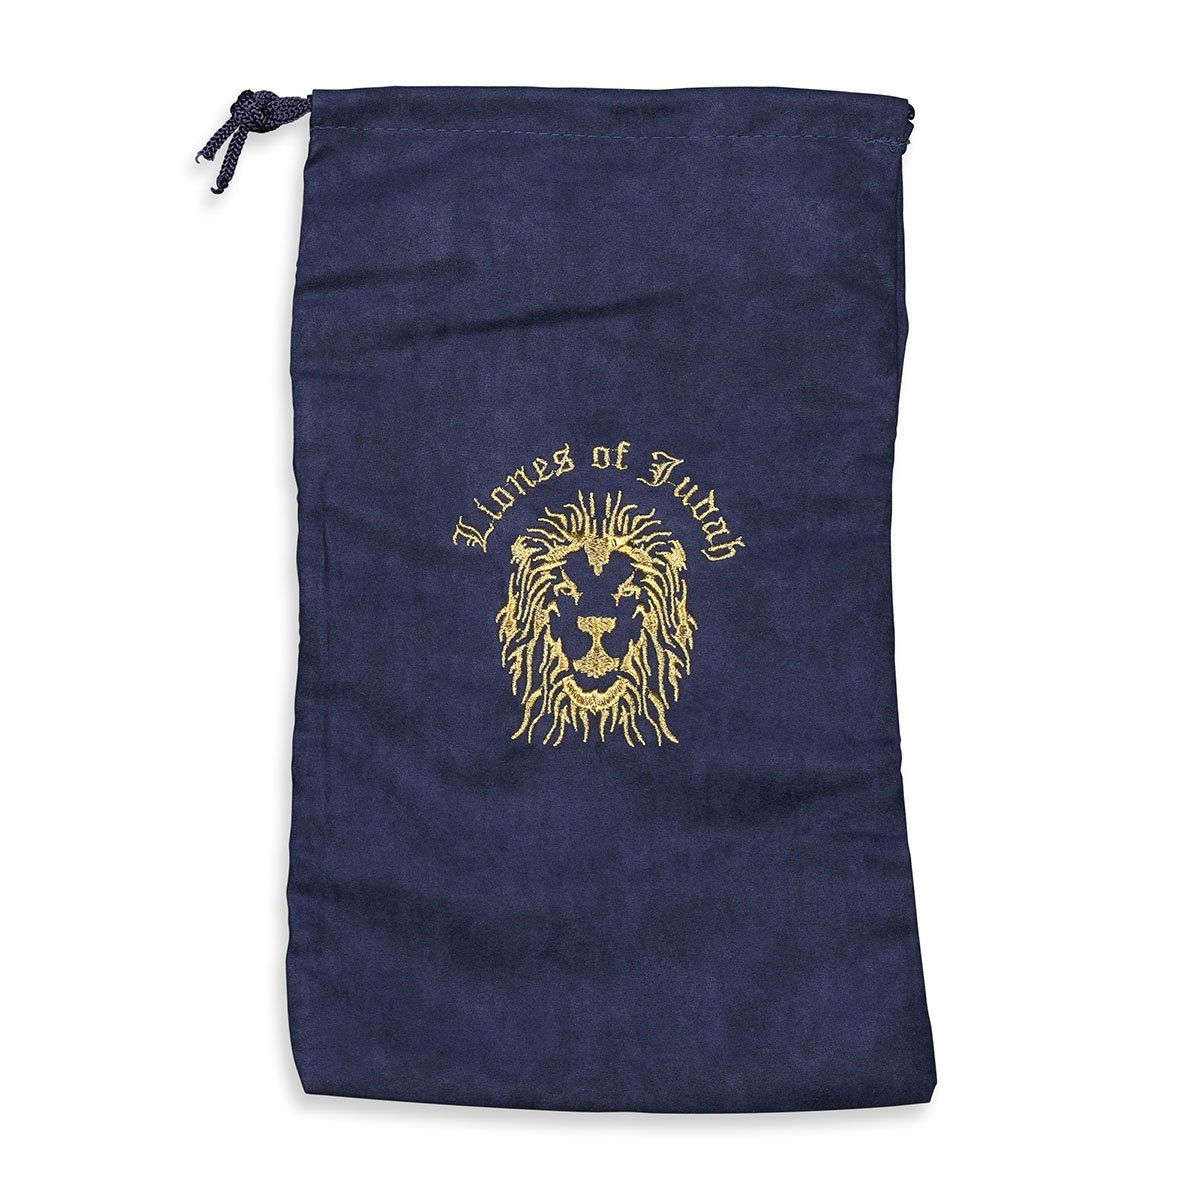 Stylish Embroidered Velvet Shofar Bag With Lion of Judah Design - 1